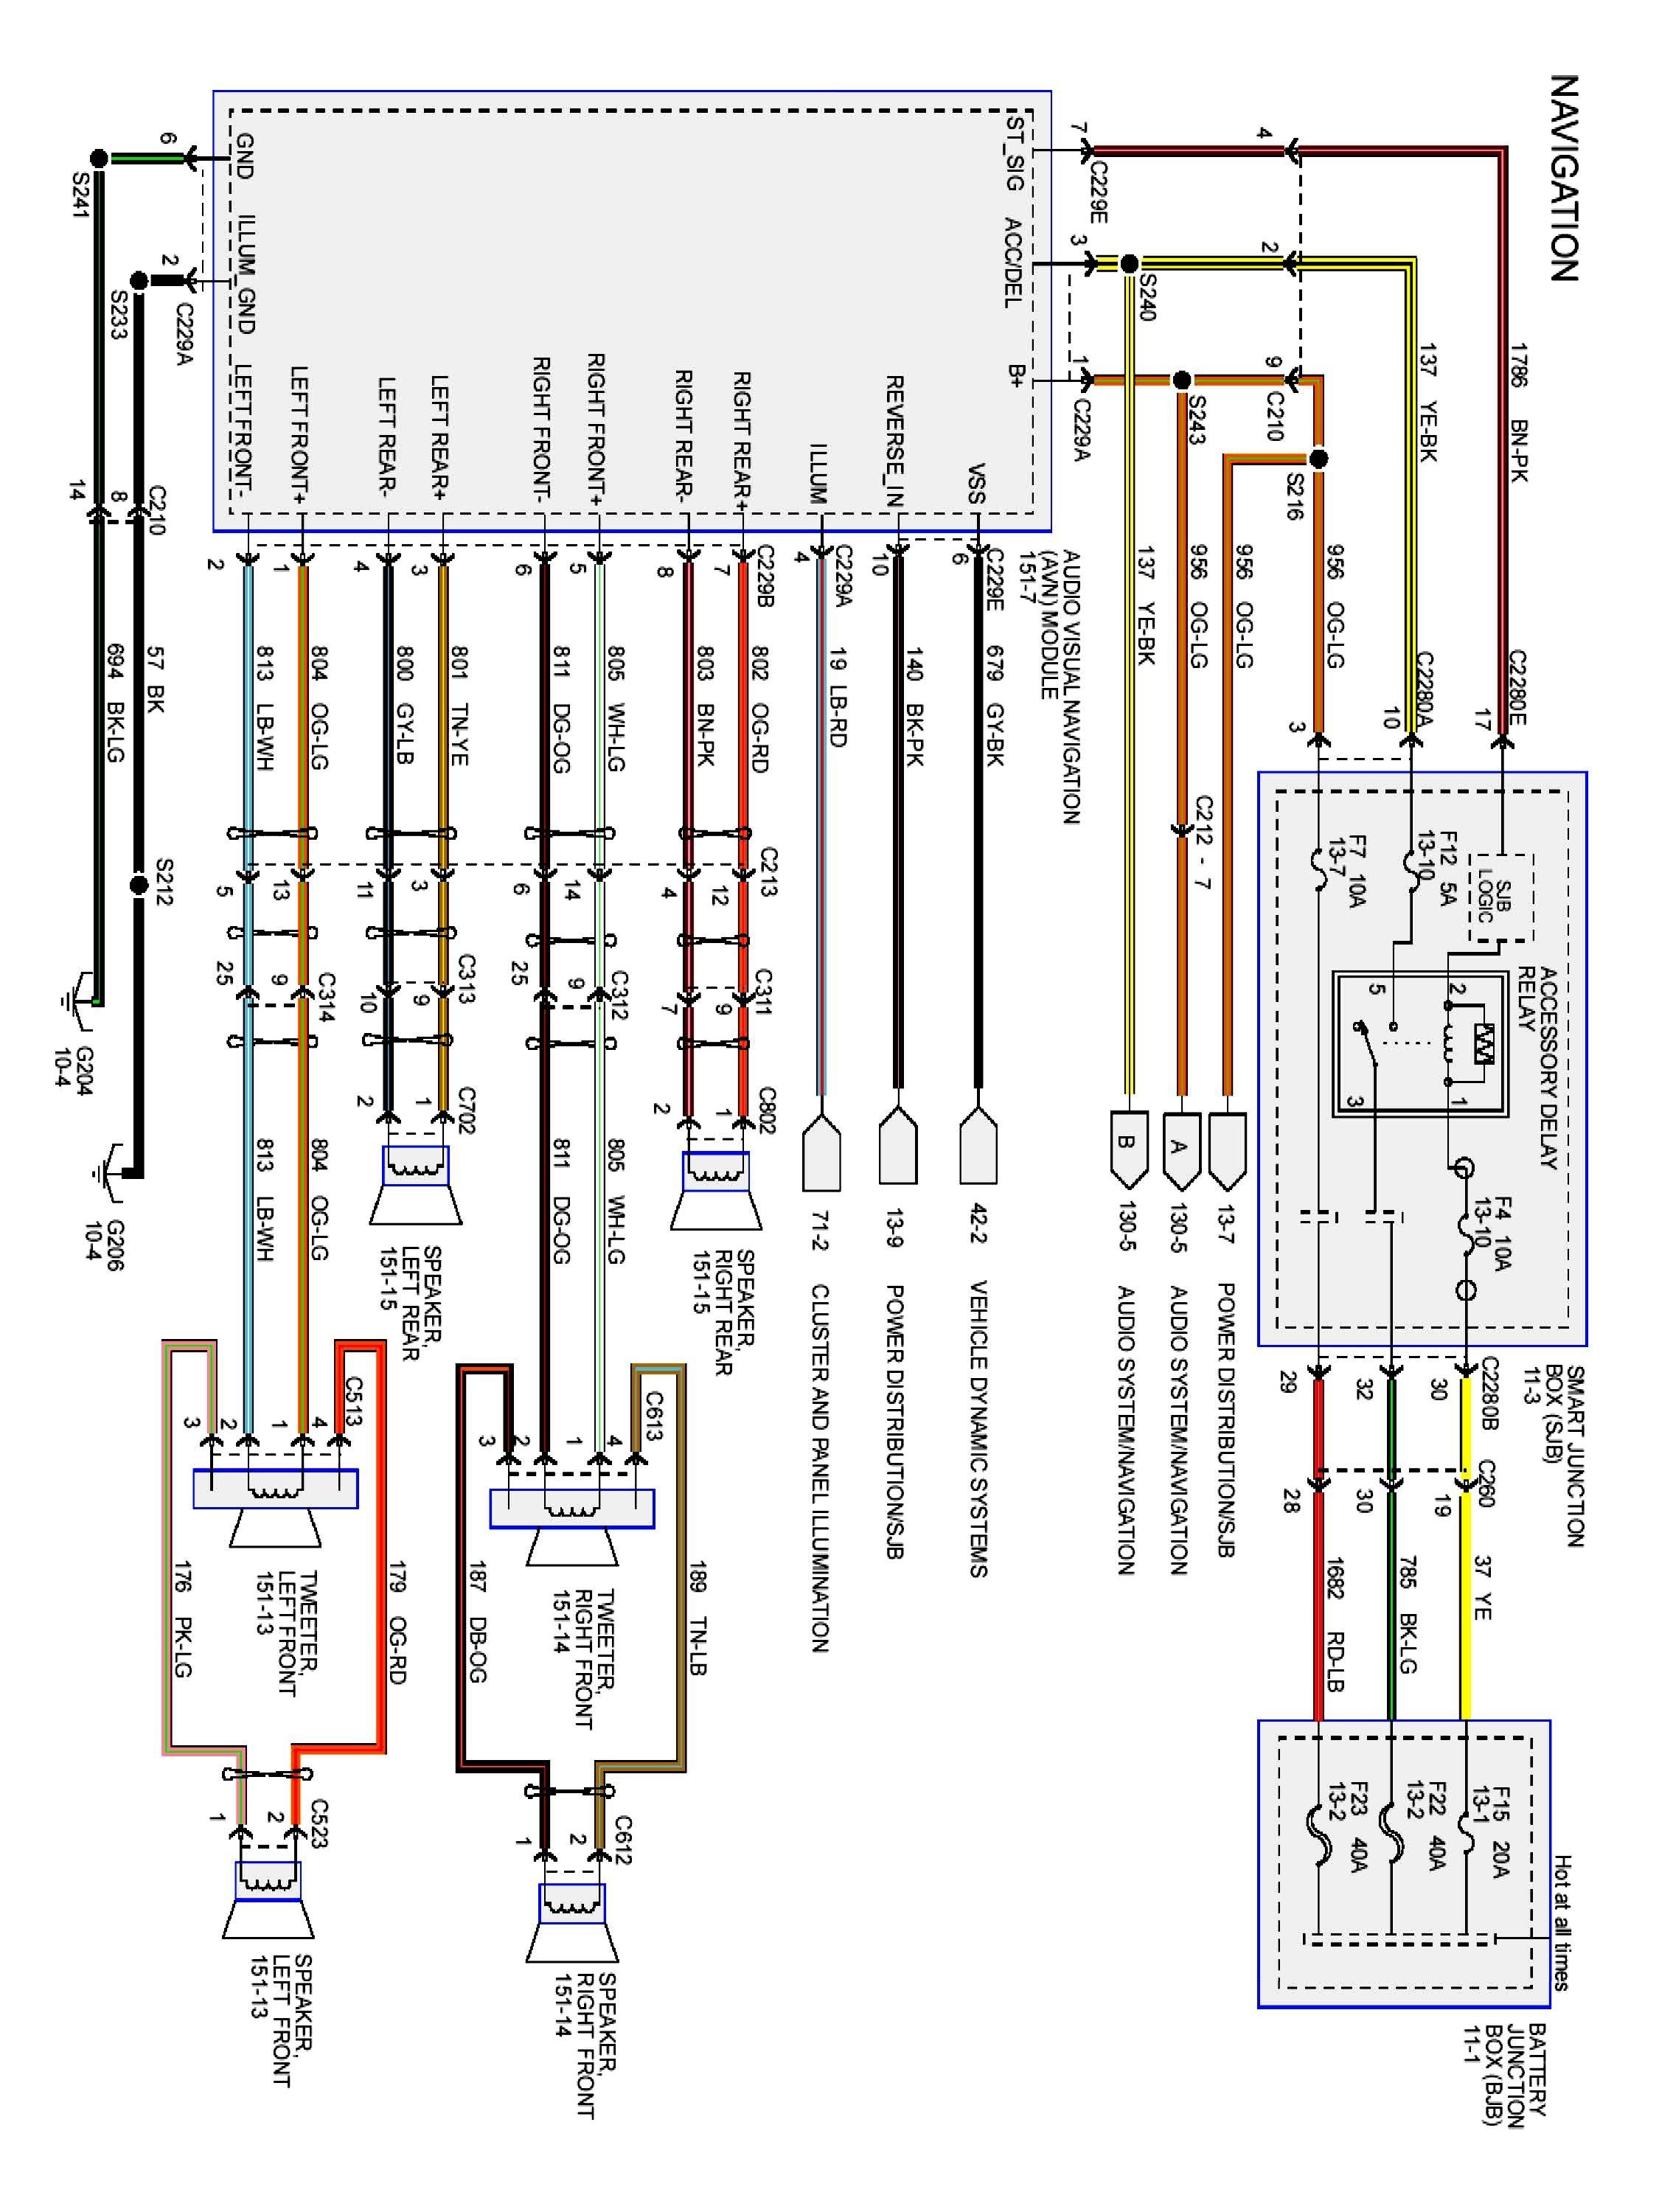 File Name  F150 Wiring Diagram 03